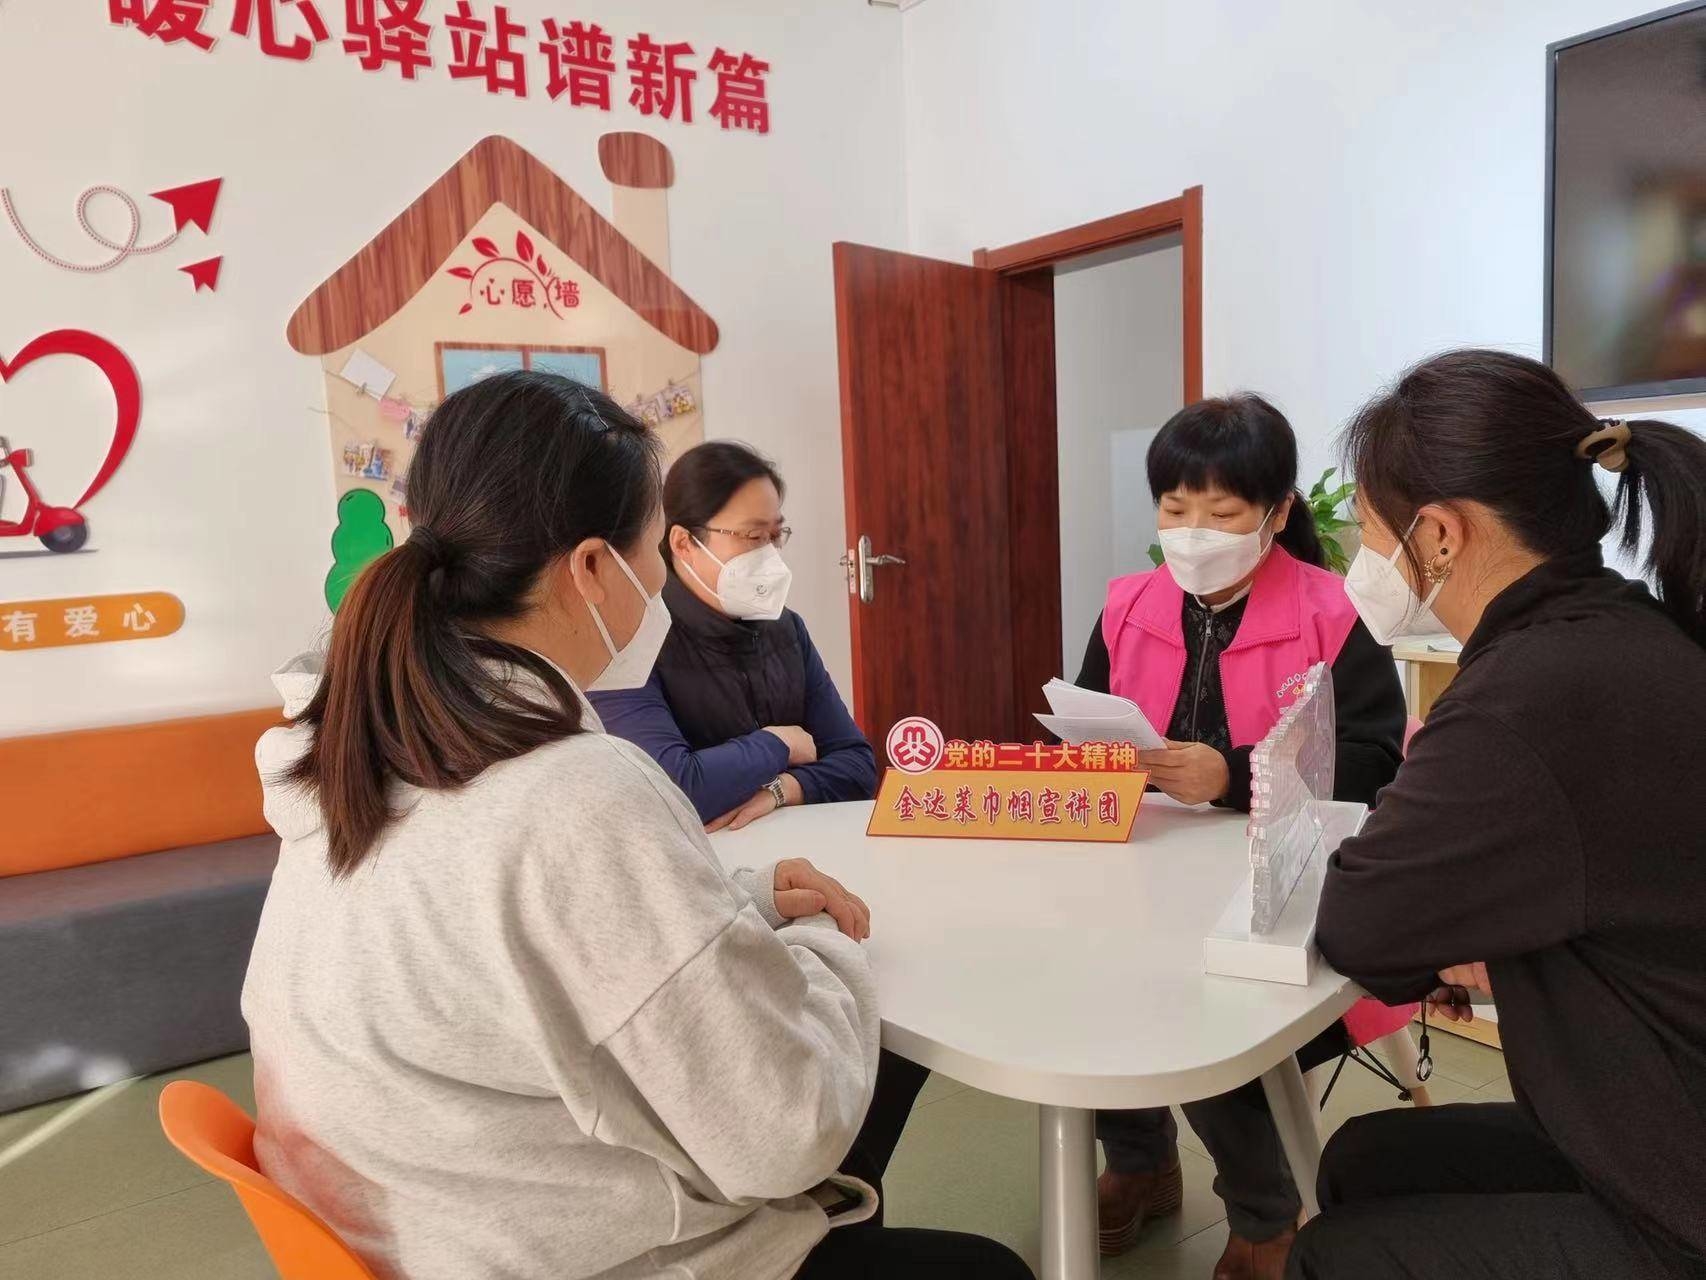 延吉市妇联组建“金达莱巾帼宣讲团” 把党的二十大精神送到妇女群众身边